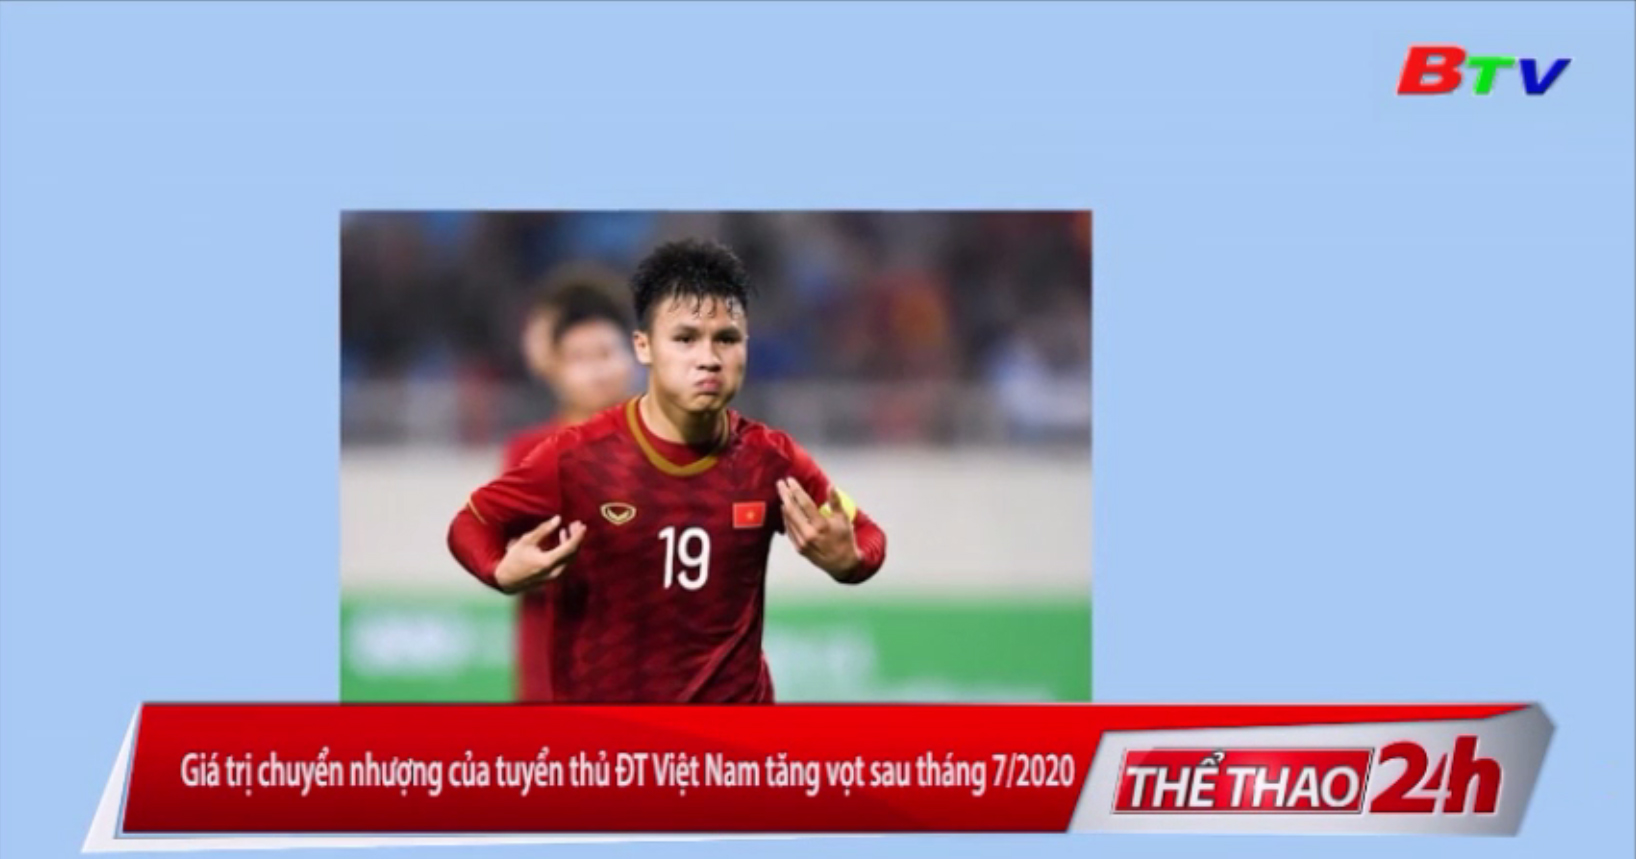 Giá trị chuyển nhượng của tuyển thủ ĐT Việt Nam tăng vọt sau tháng 7/2020